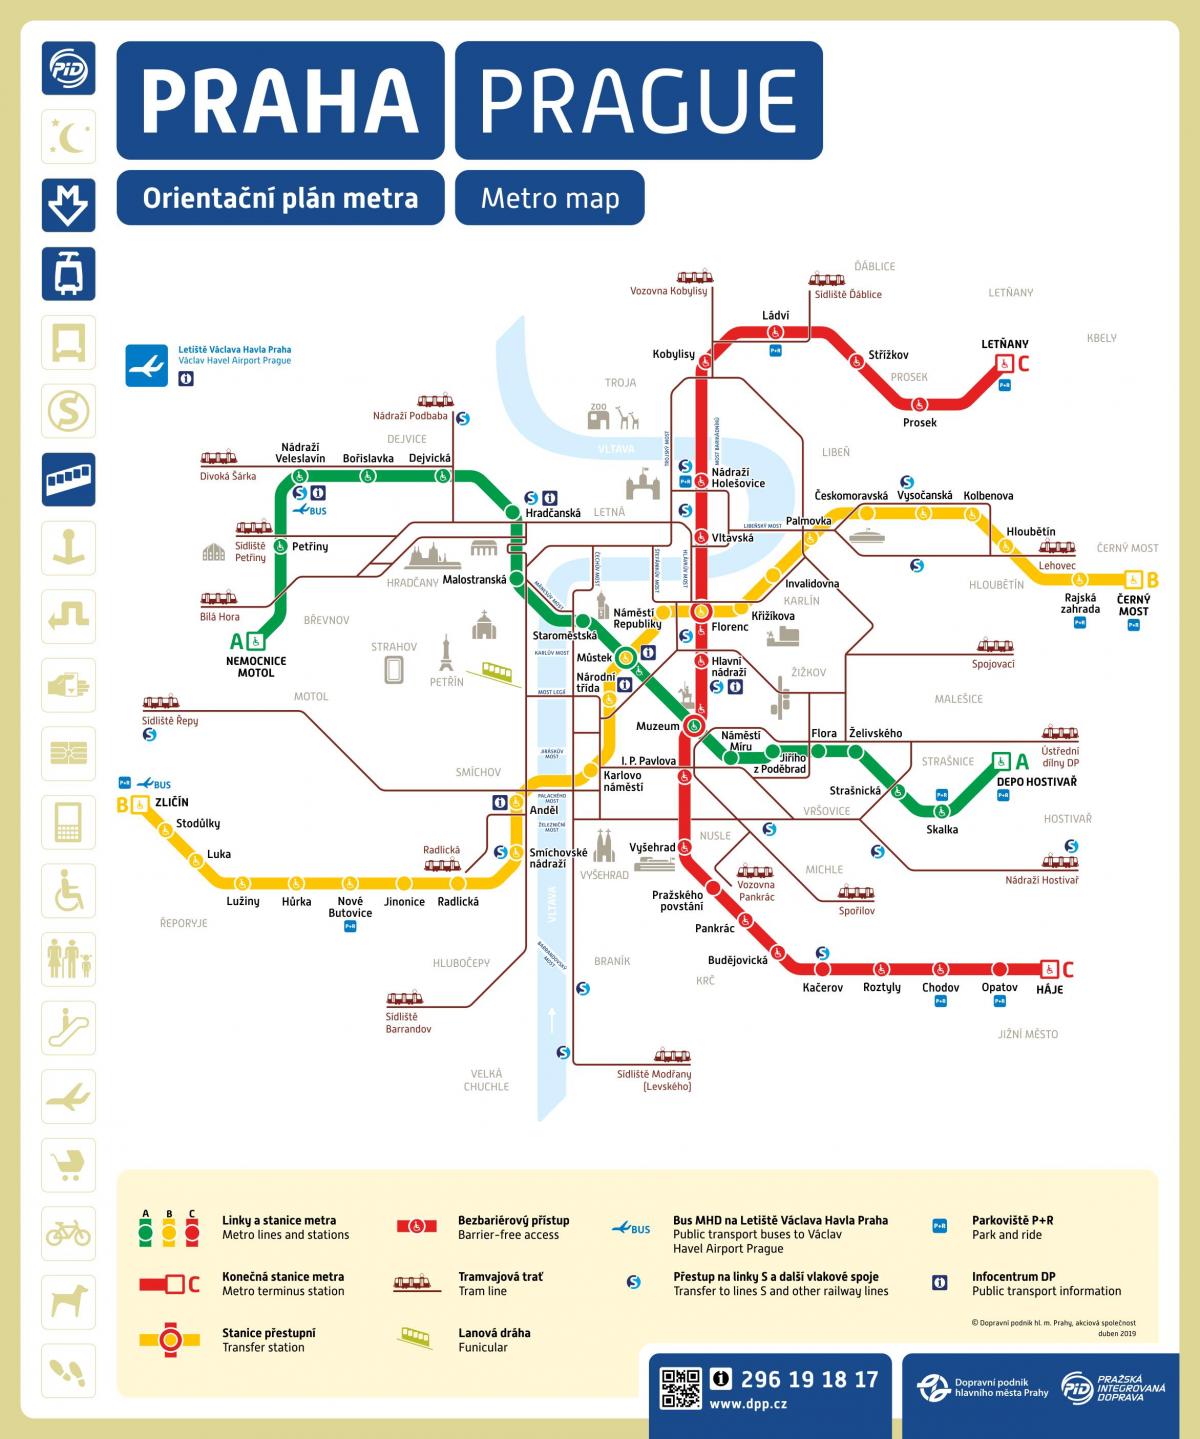 Plan des stations de metro de Prague